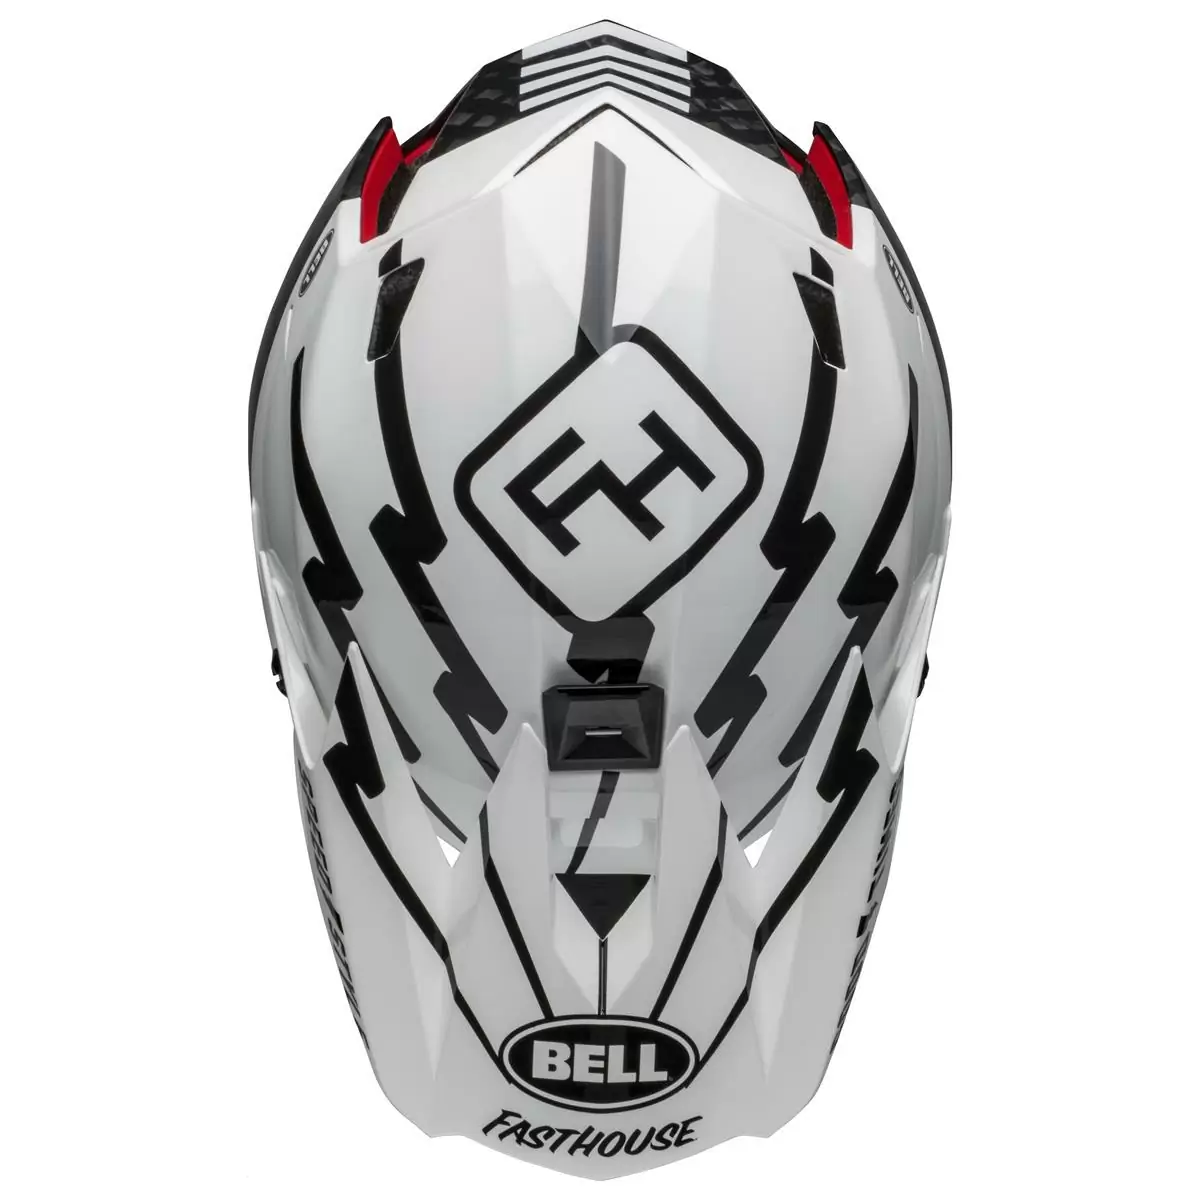 Full-10 Spherical Fasthouse Carbon Full Face Helmet Size L (57-59cm) #8